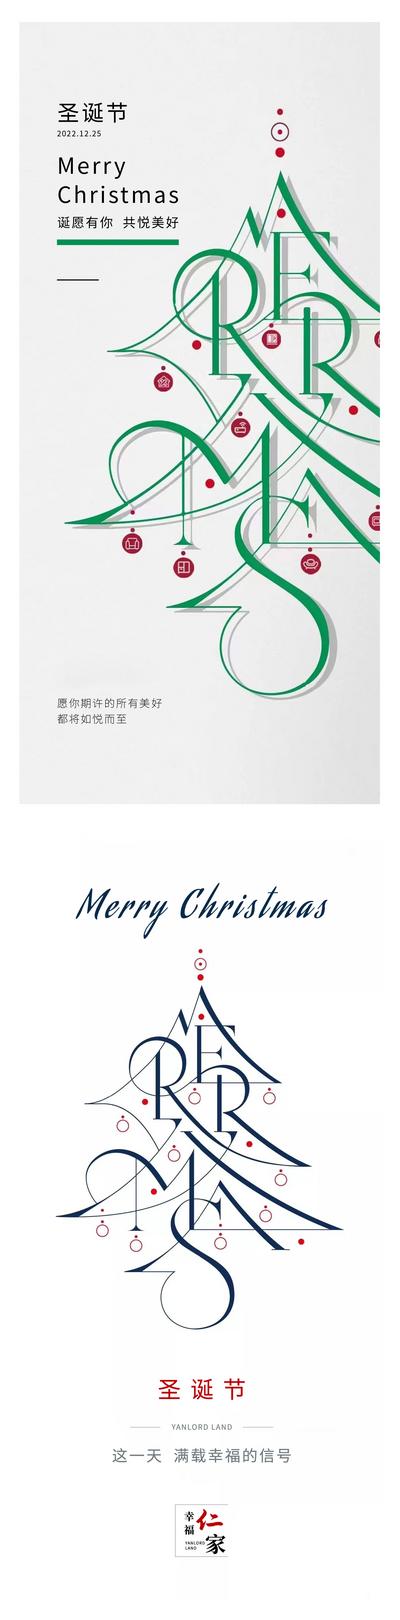 【南门网】广告 海报 节日 圣诞节 圣诞树 插画 简约